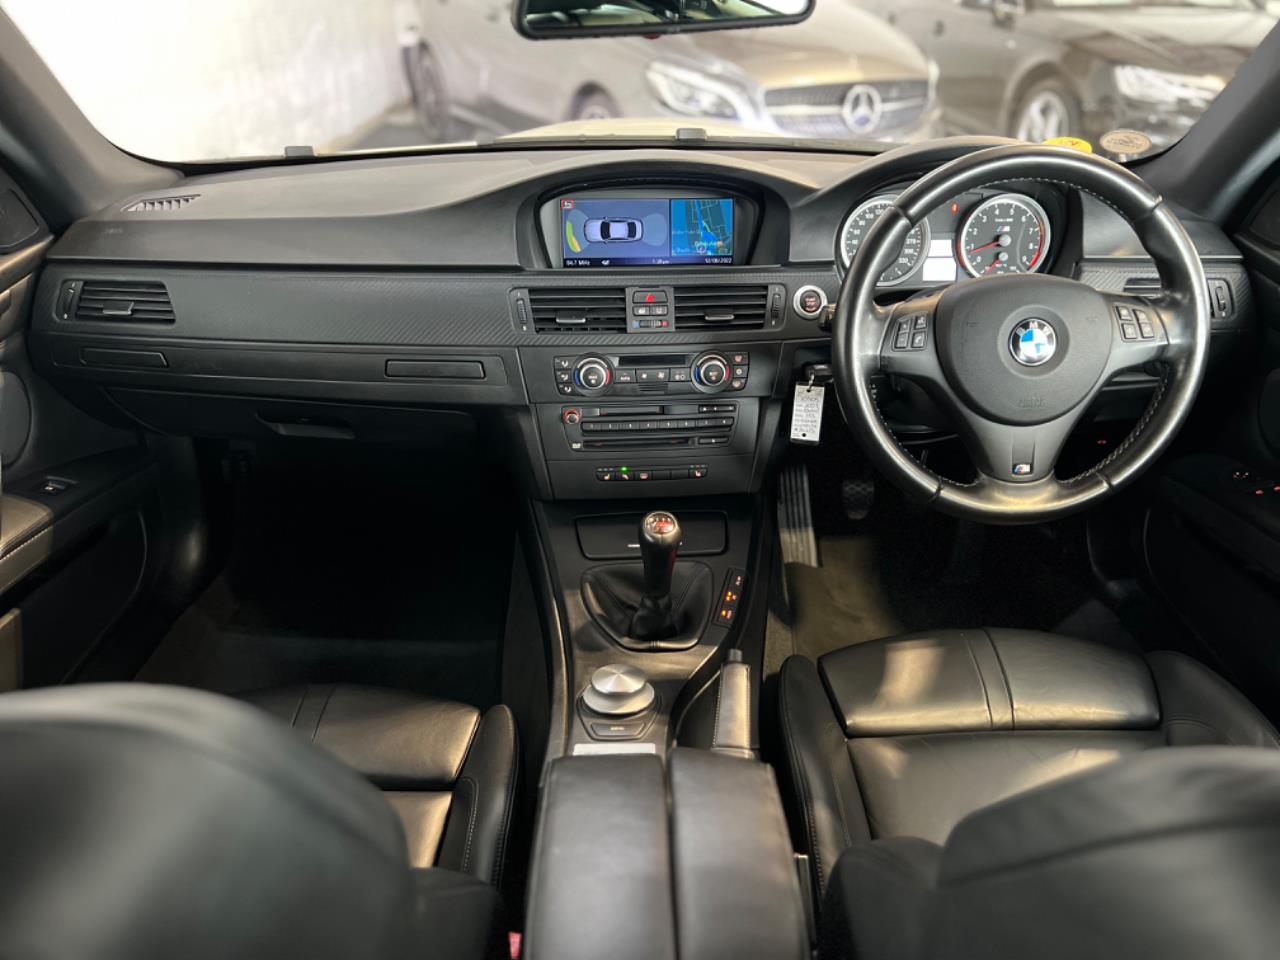 2007 BMW M3